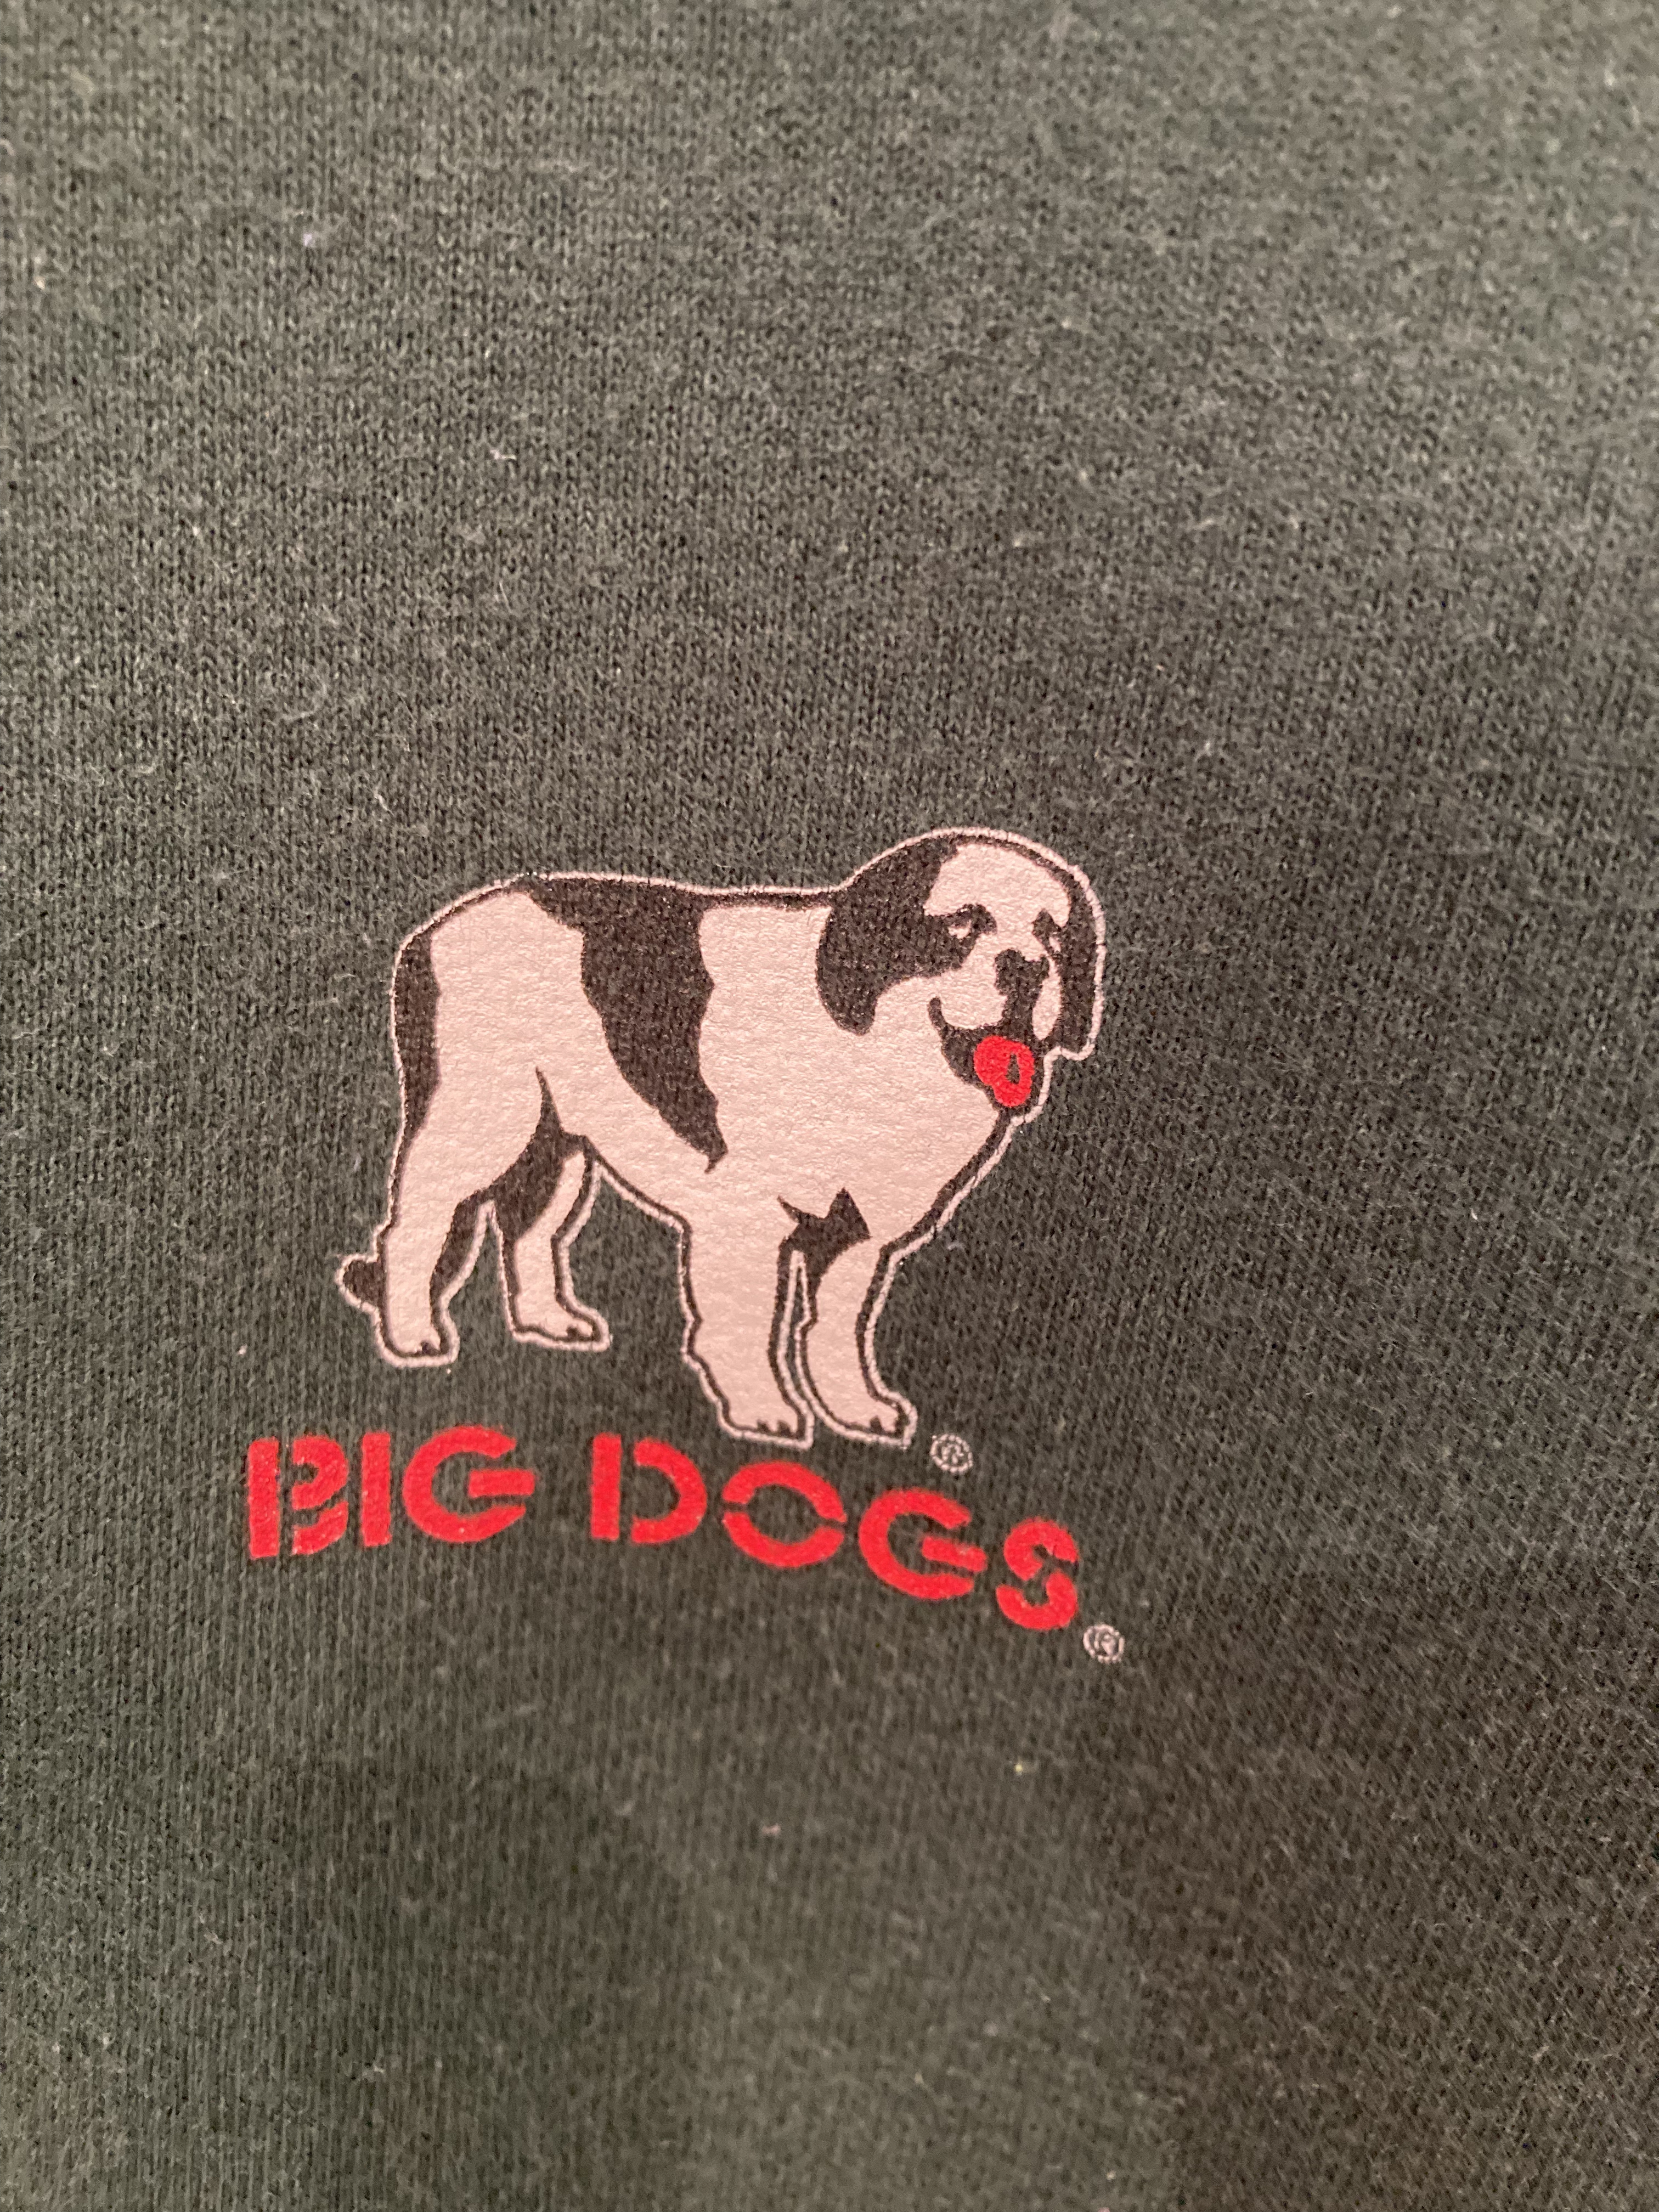 90s セントバーナードtシャツ ヴィンテージ 犬 dog 動物 アニマル 猫-